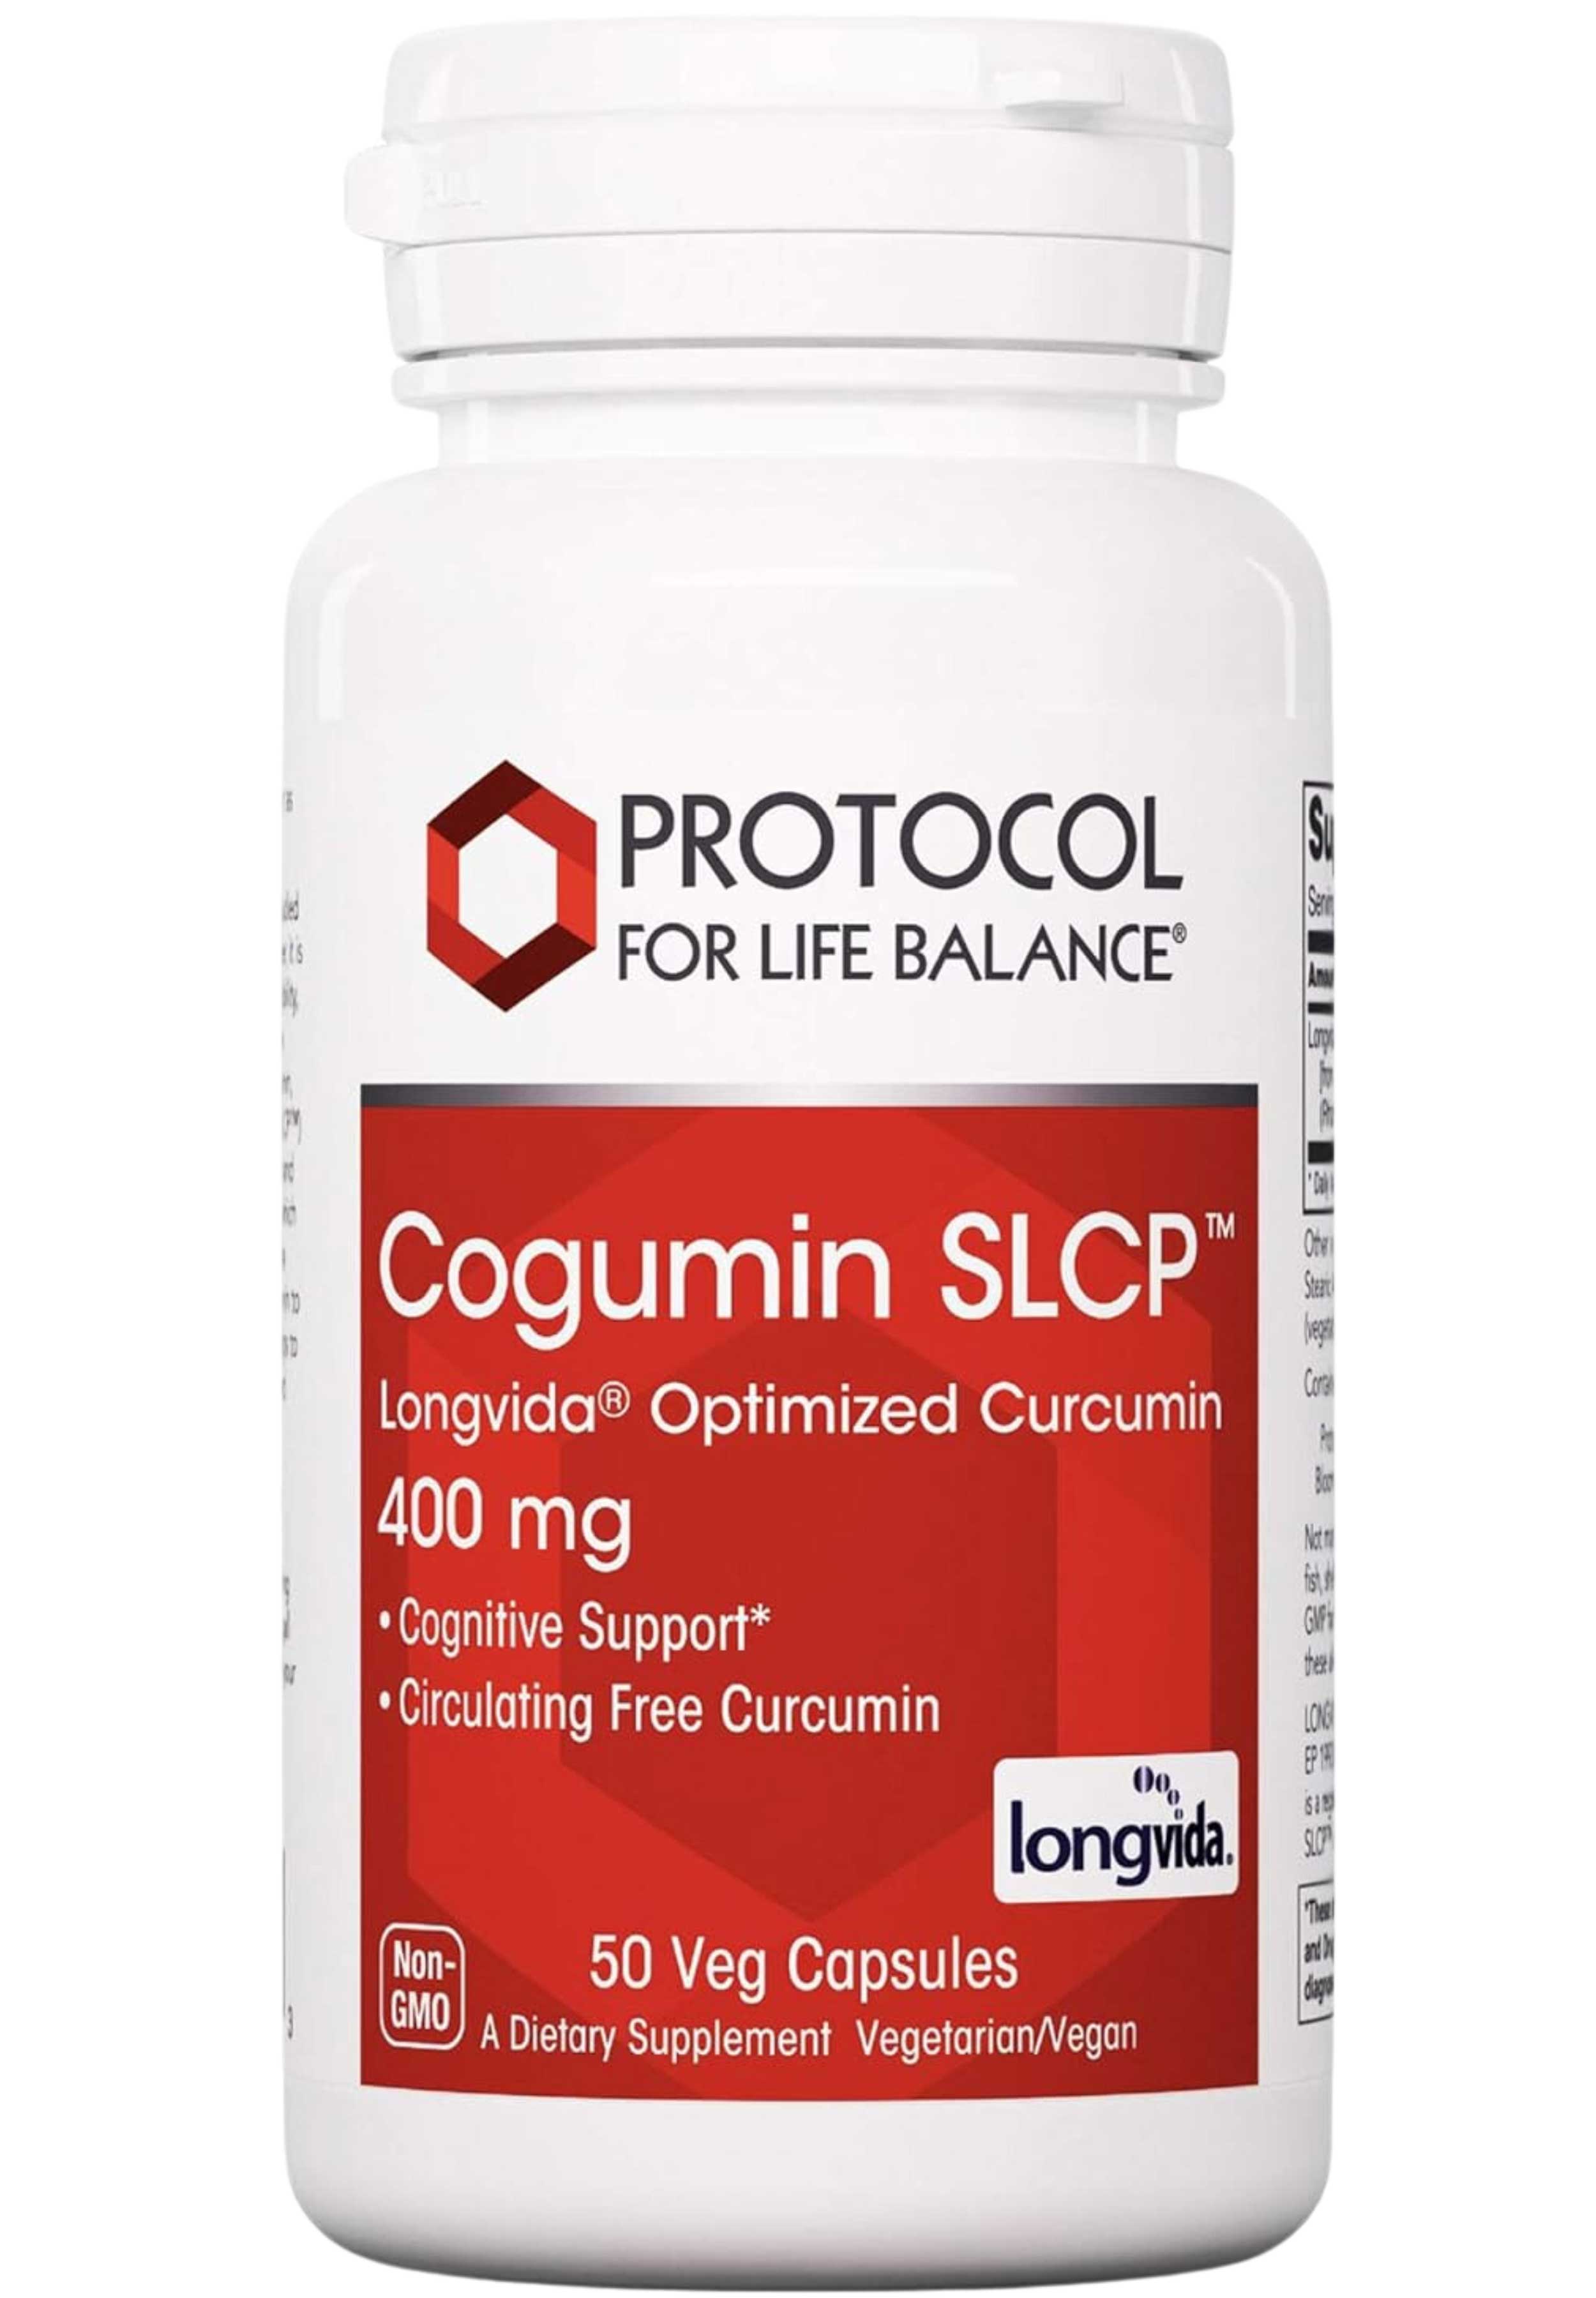 Protocol for Life Balance Cogumin SLCP